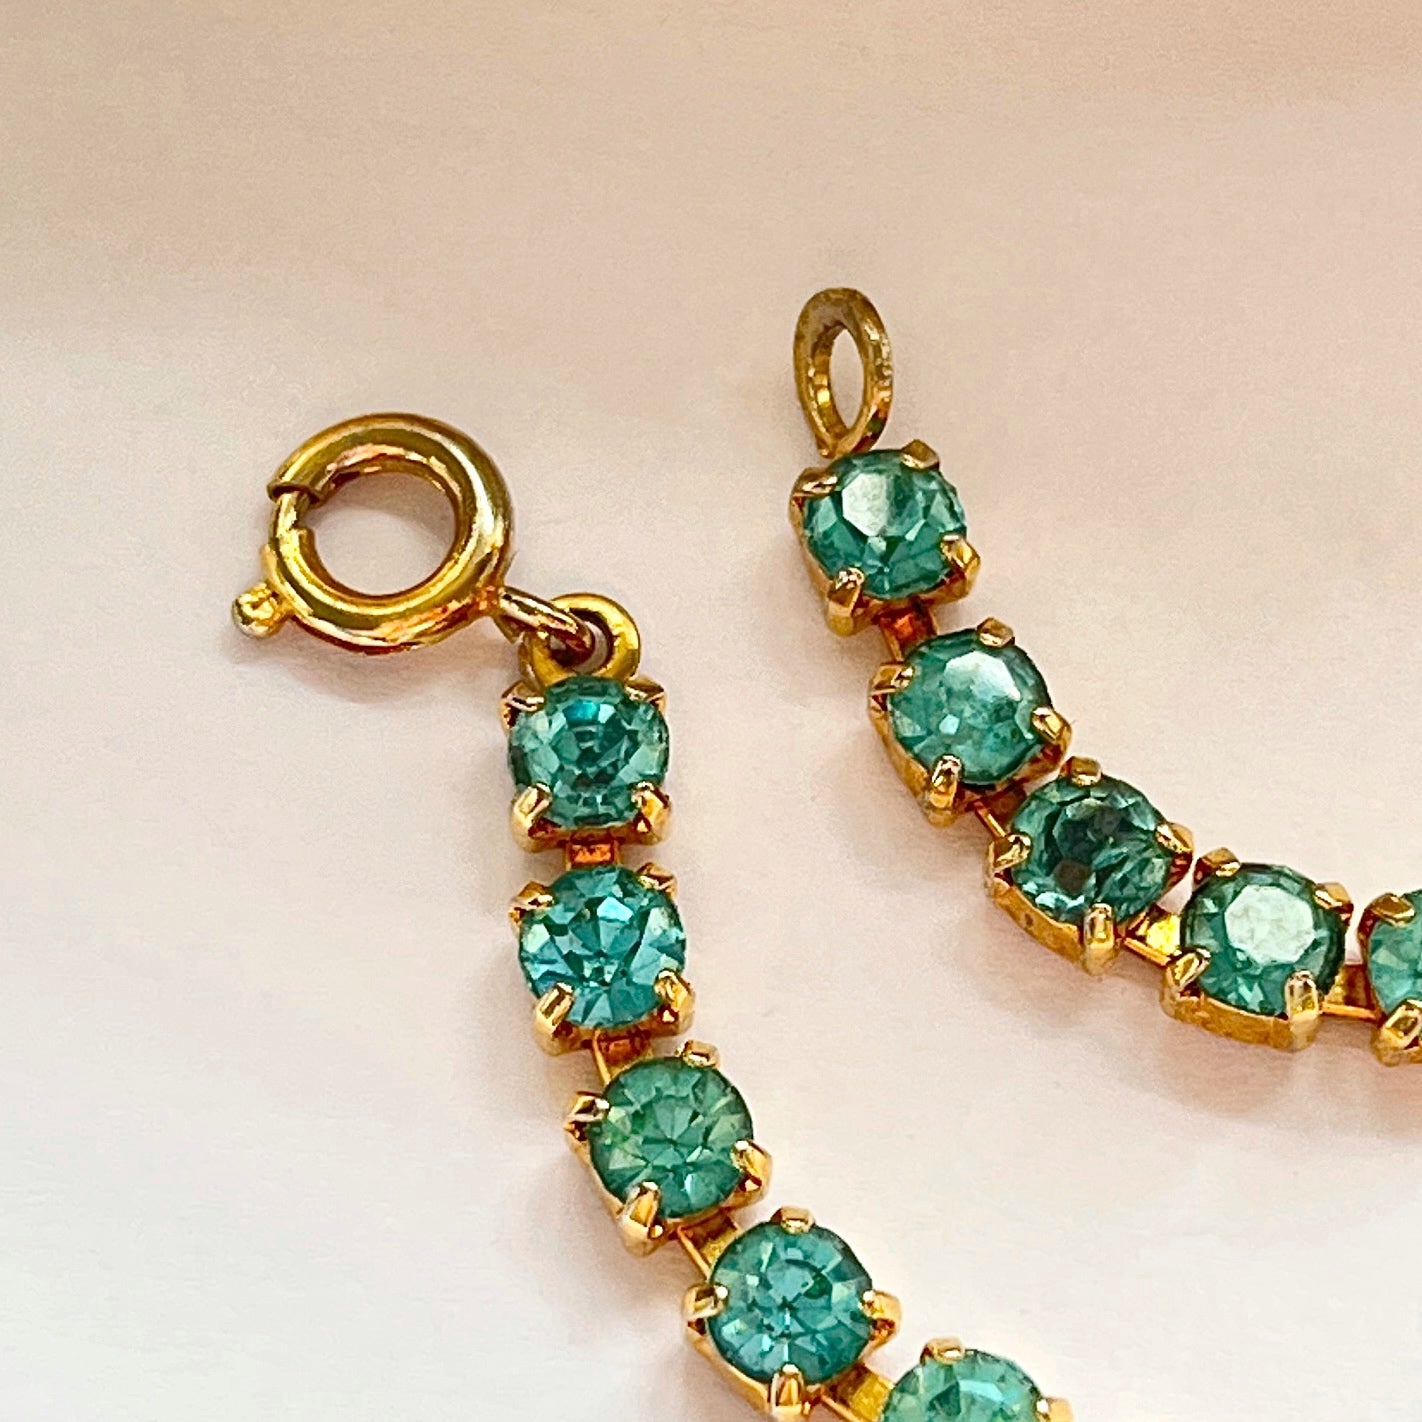 1950s Aqua Blue Diamanté Sparkly Gold Plated Necklace